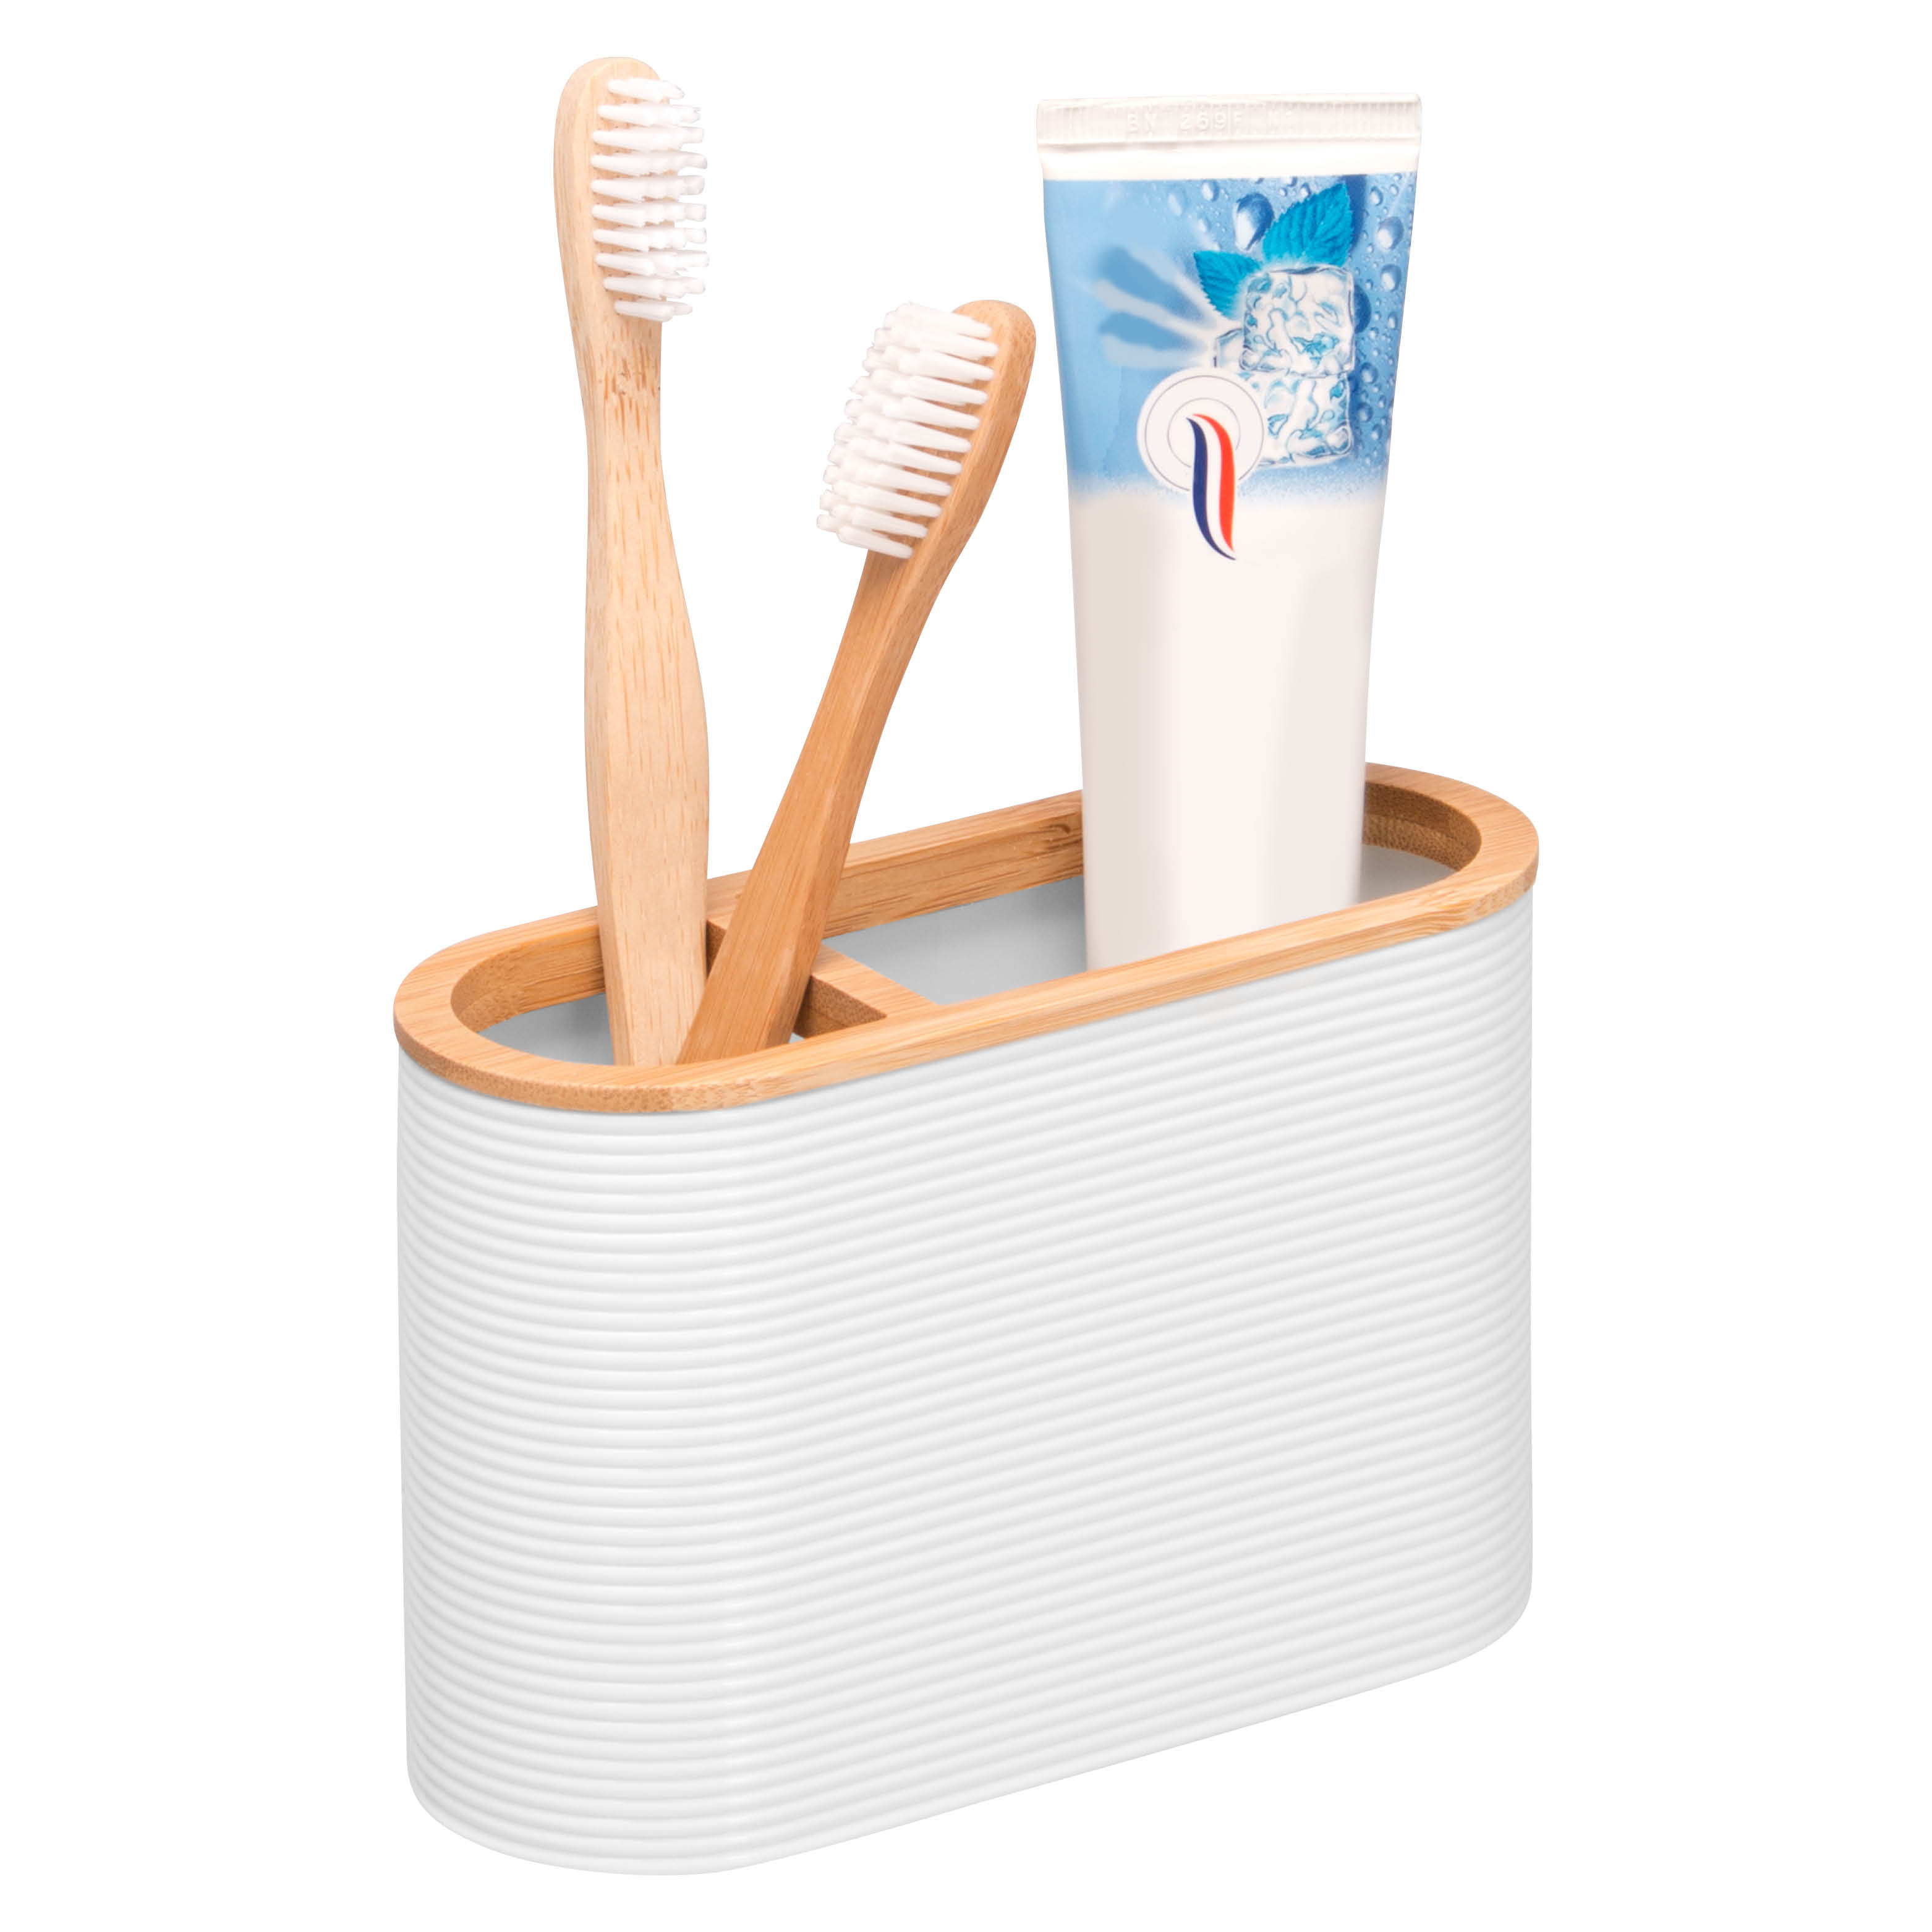 Zahnbürstenhalter SEGNO aus Bambus und Kunststoff | Utensilienständer, weiß